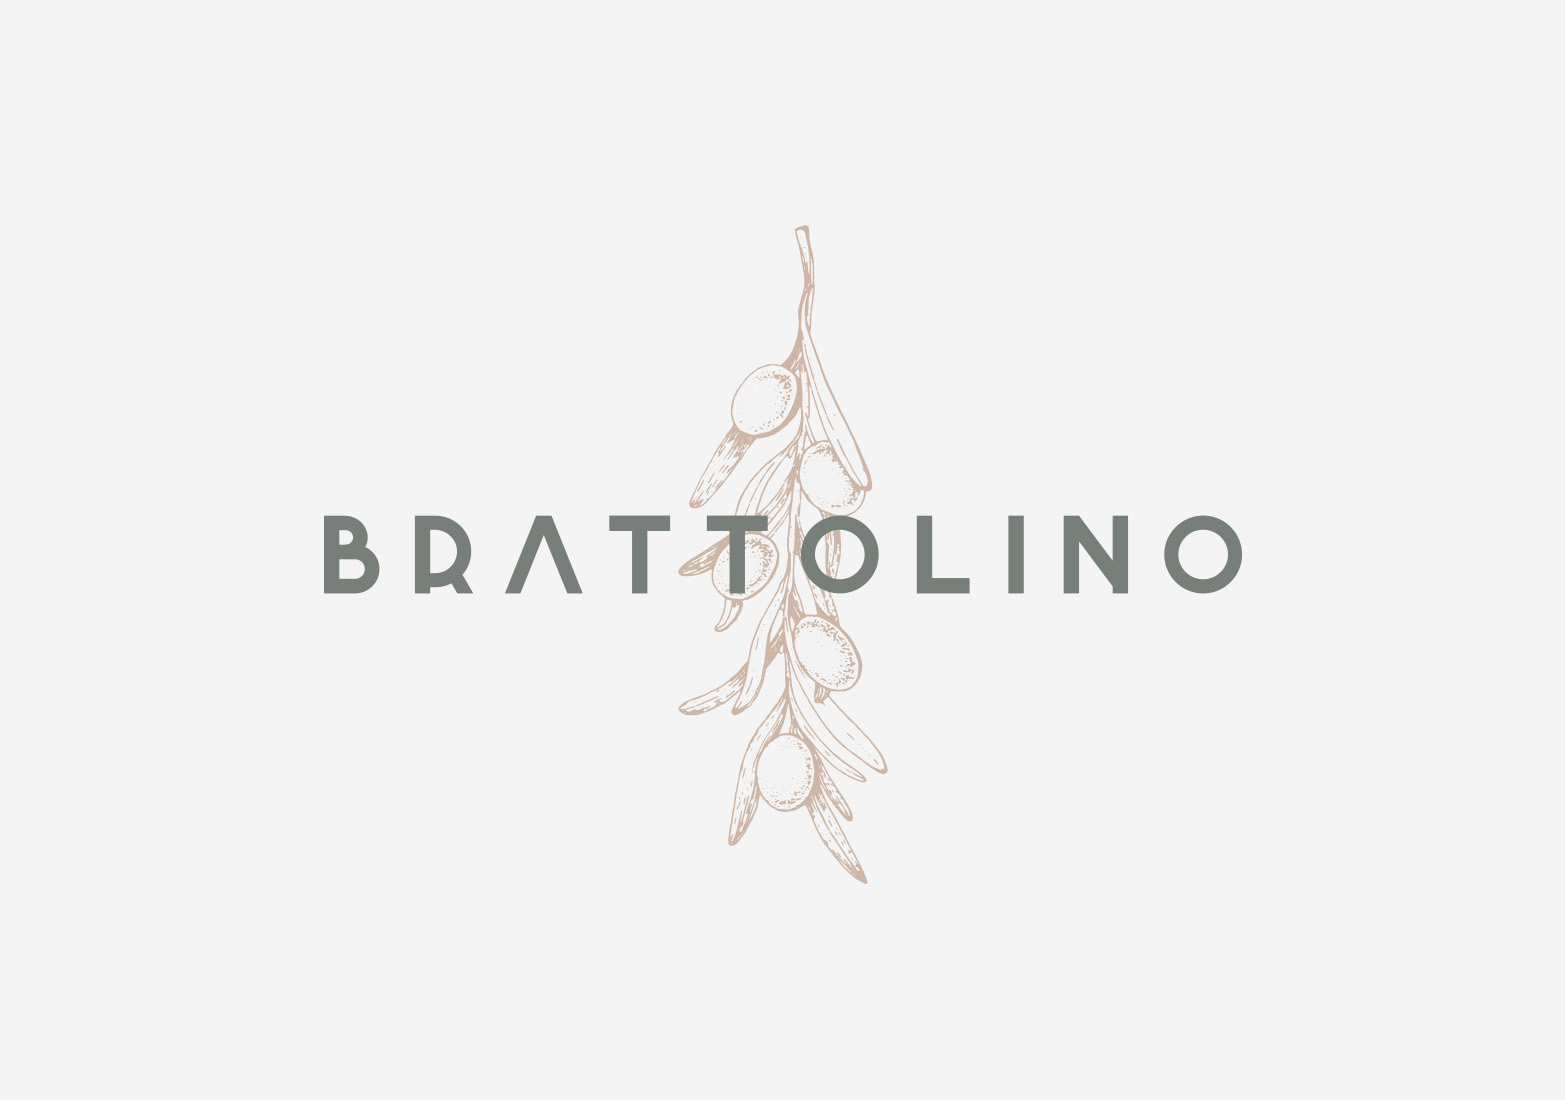 Brattolino: Branding